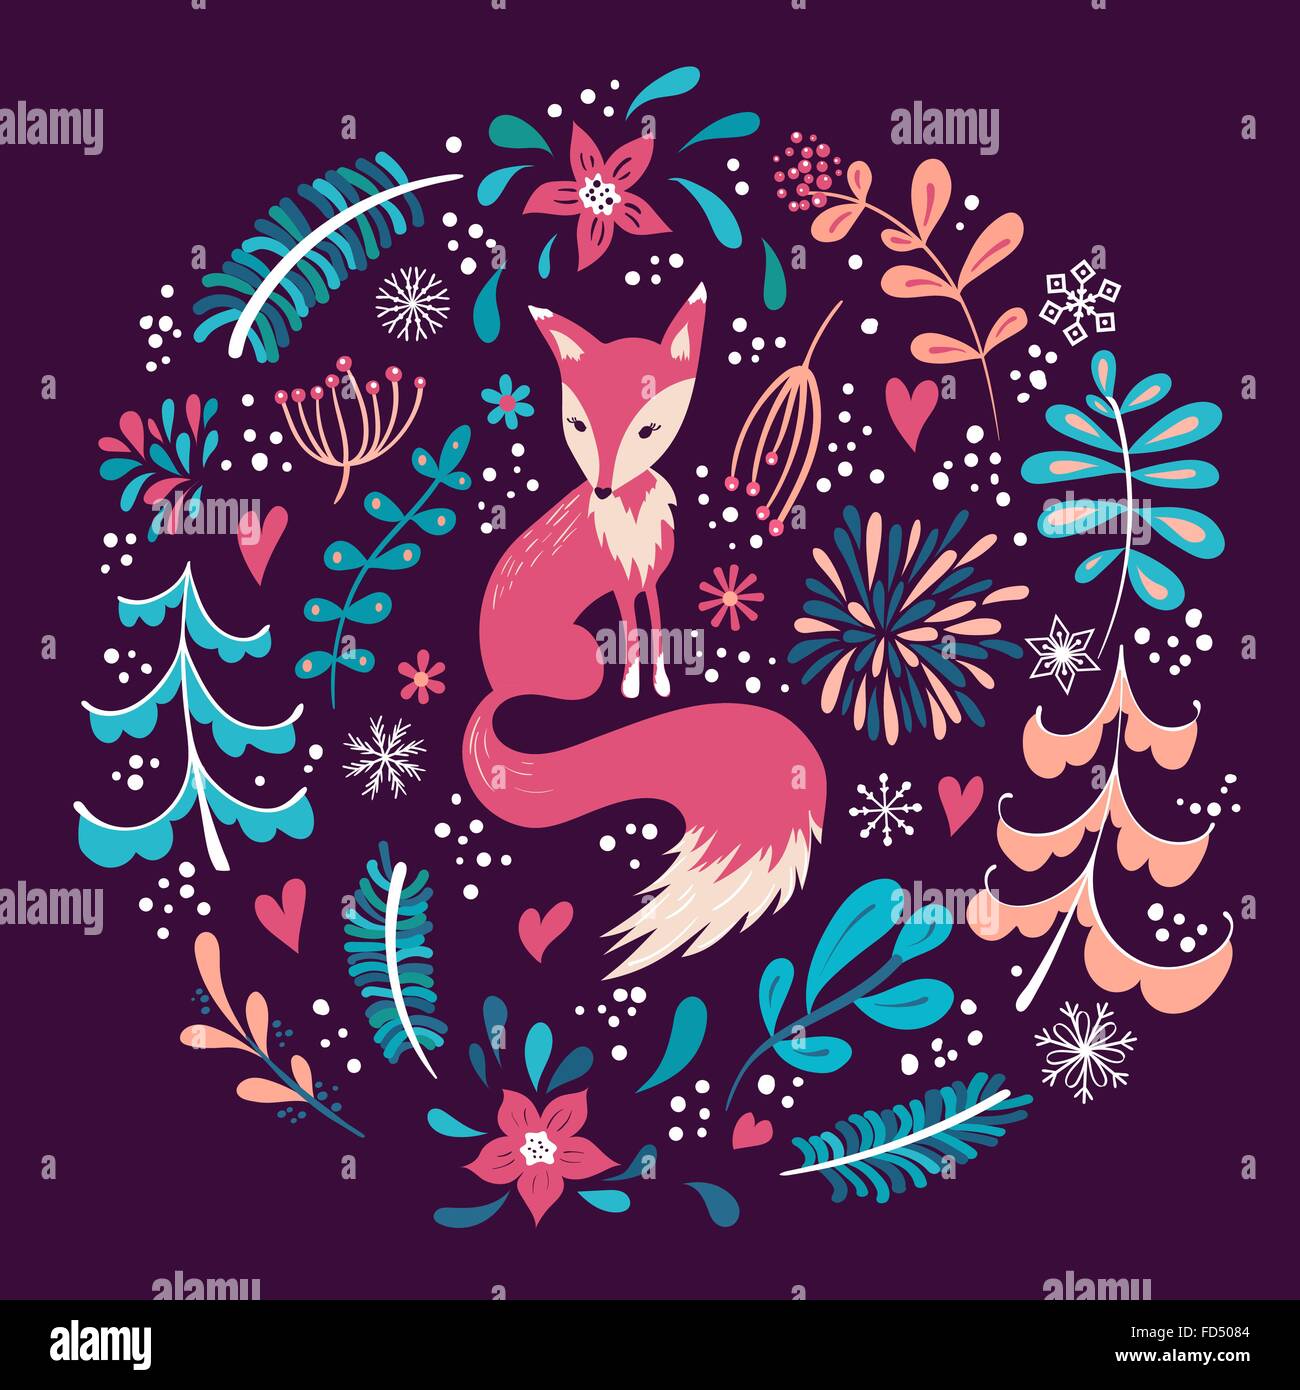 Fuchs mit Winter Blumen und Schneeflocken.  Die Hand gezeichnete Weihnachtsferien Design für Grußkarten, Kalender, Geschenkpapier Stock Vektor